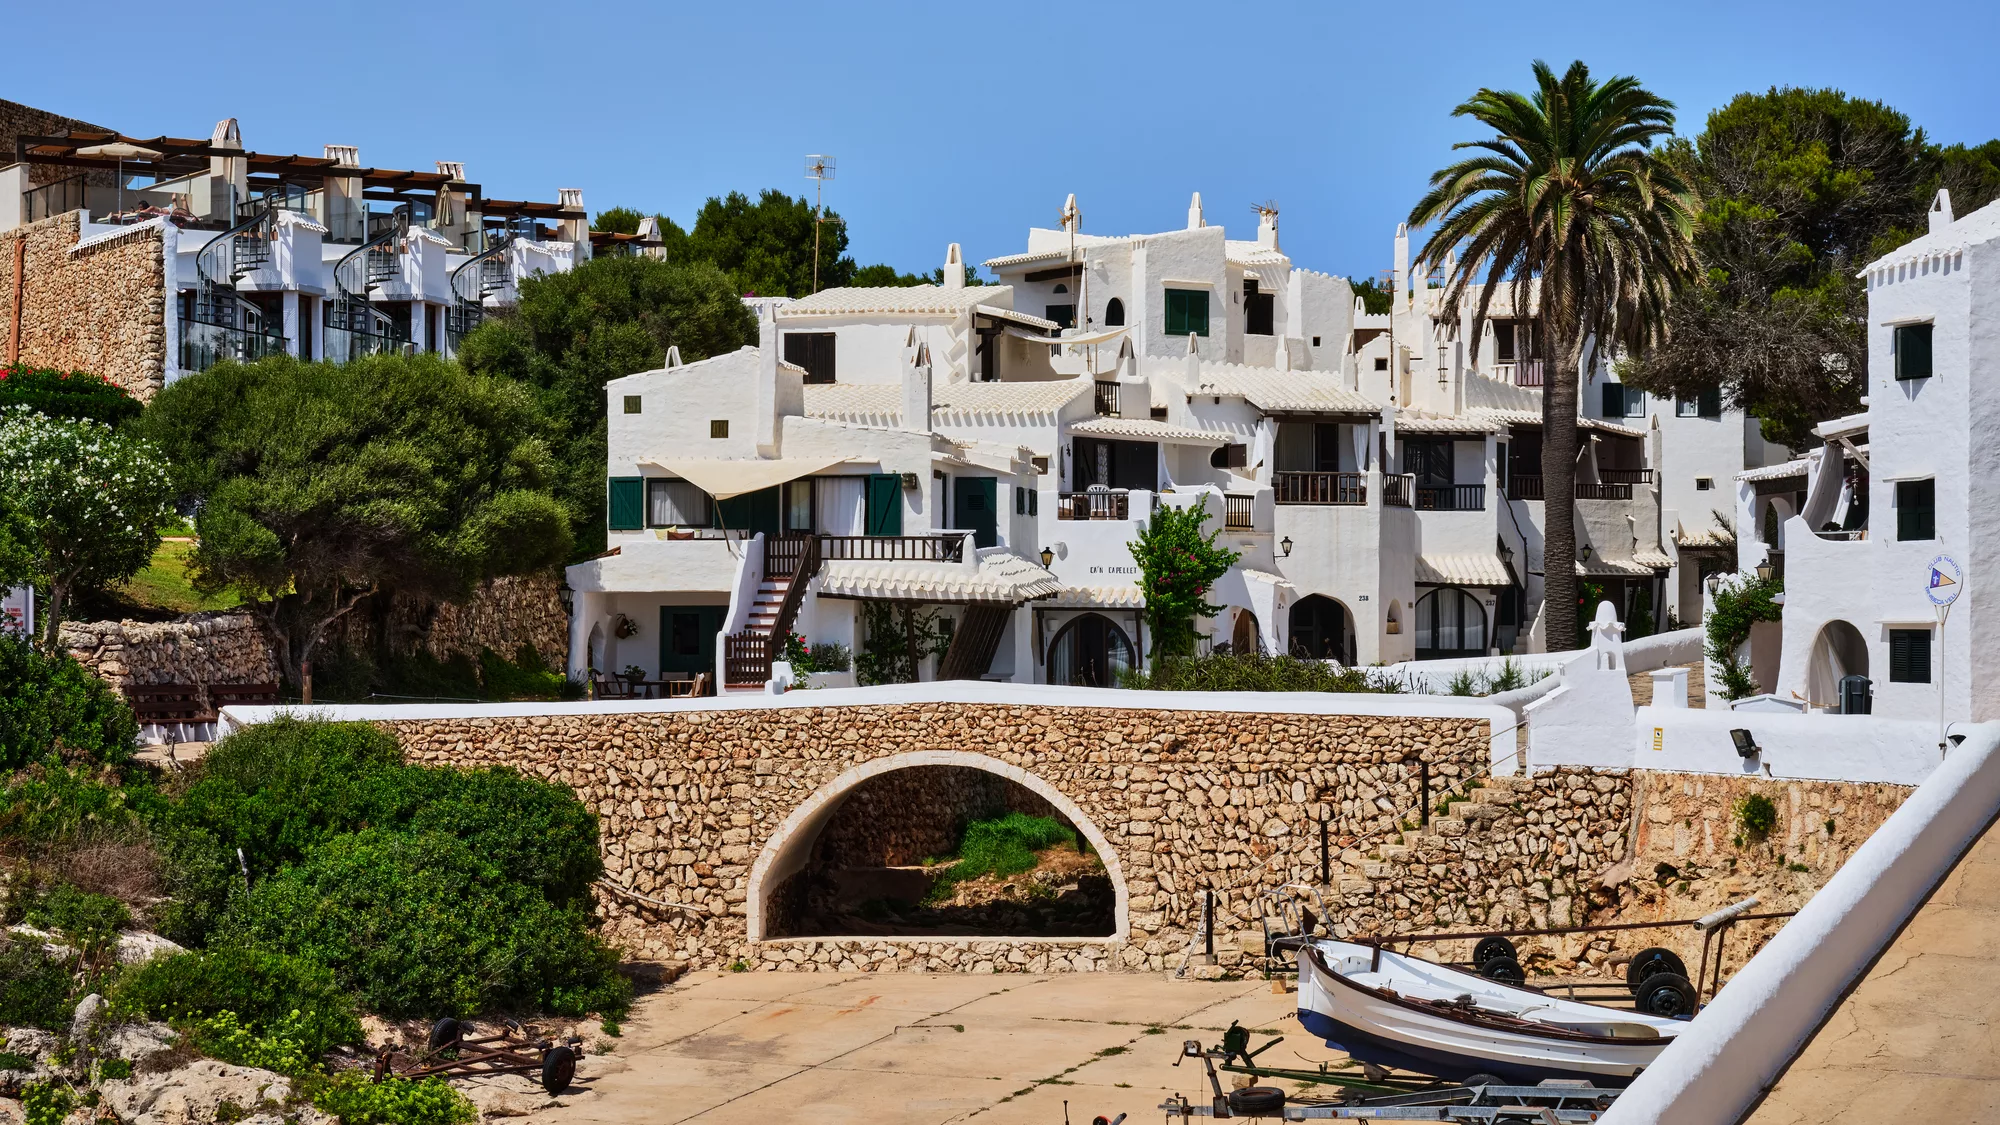 Binibeca Vell white village architecture in Menorca island, Spain